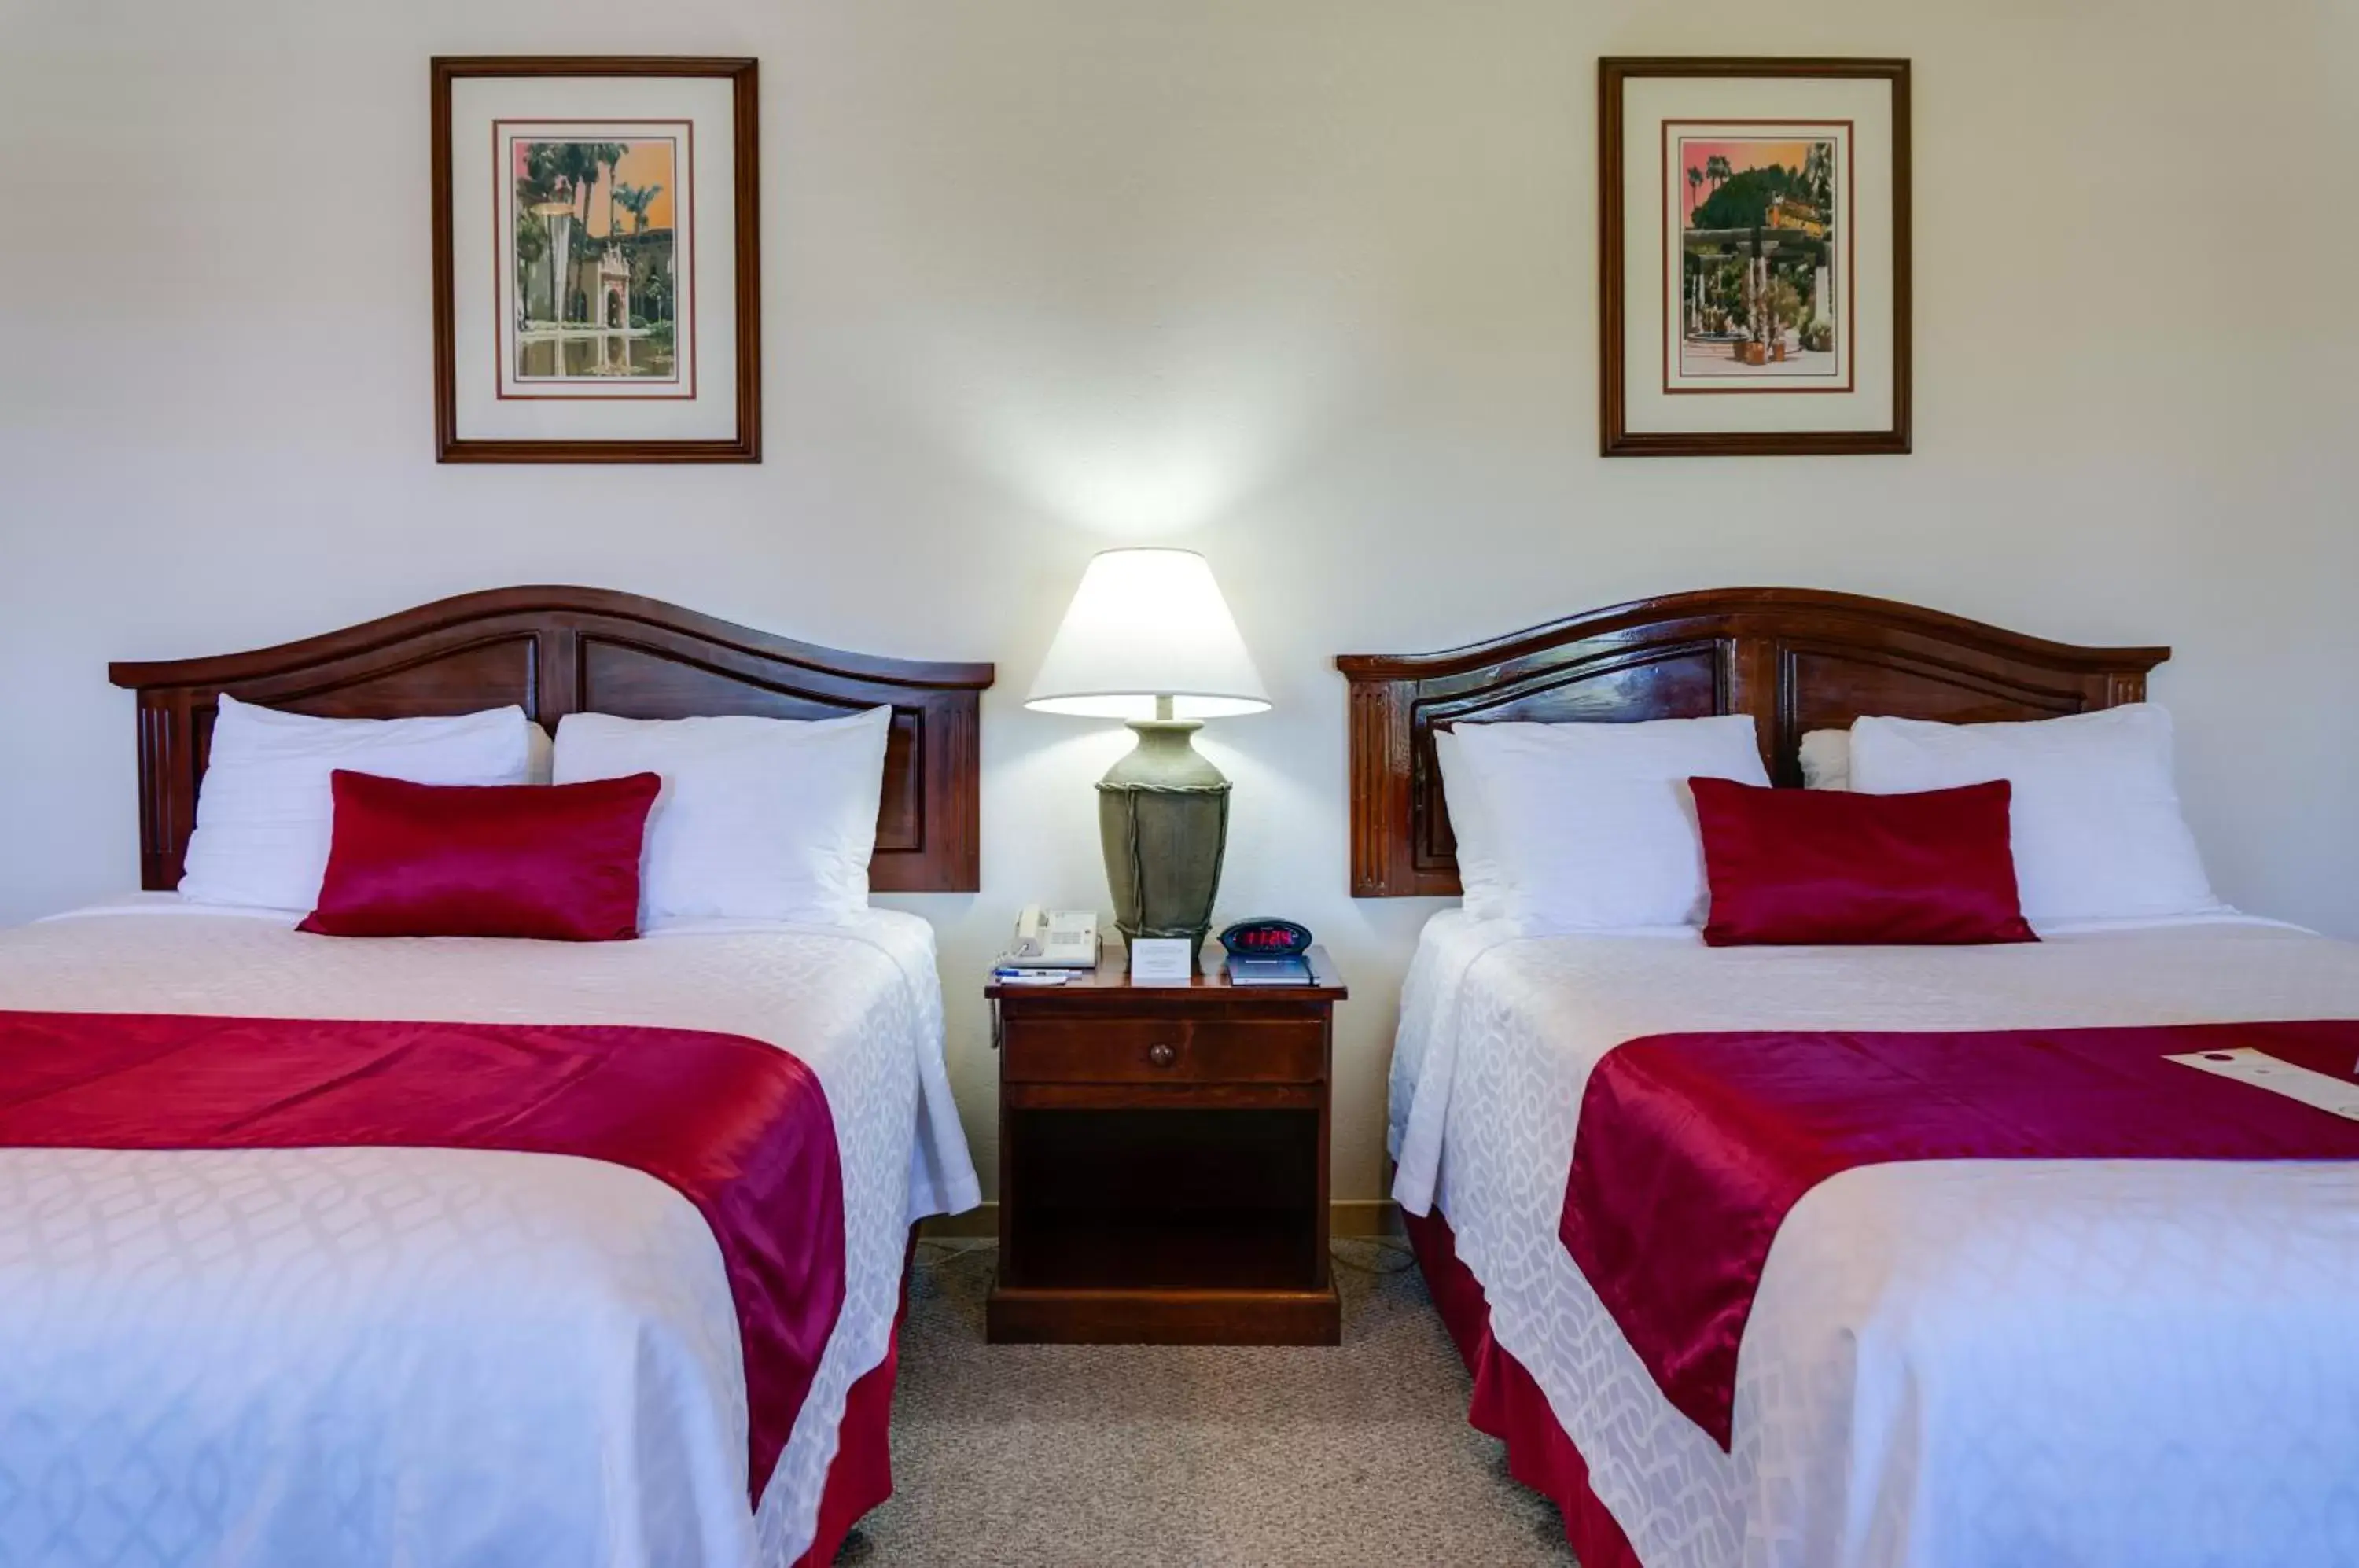 Bedroom, Bed in Best Western Plus Hacienda Hotel Old Town